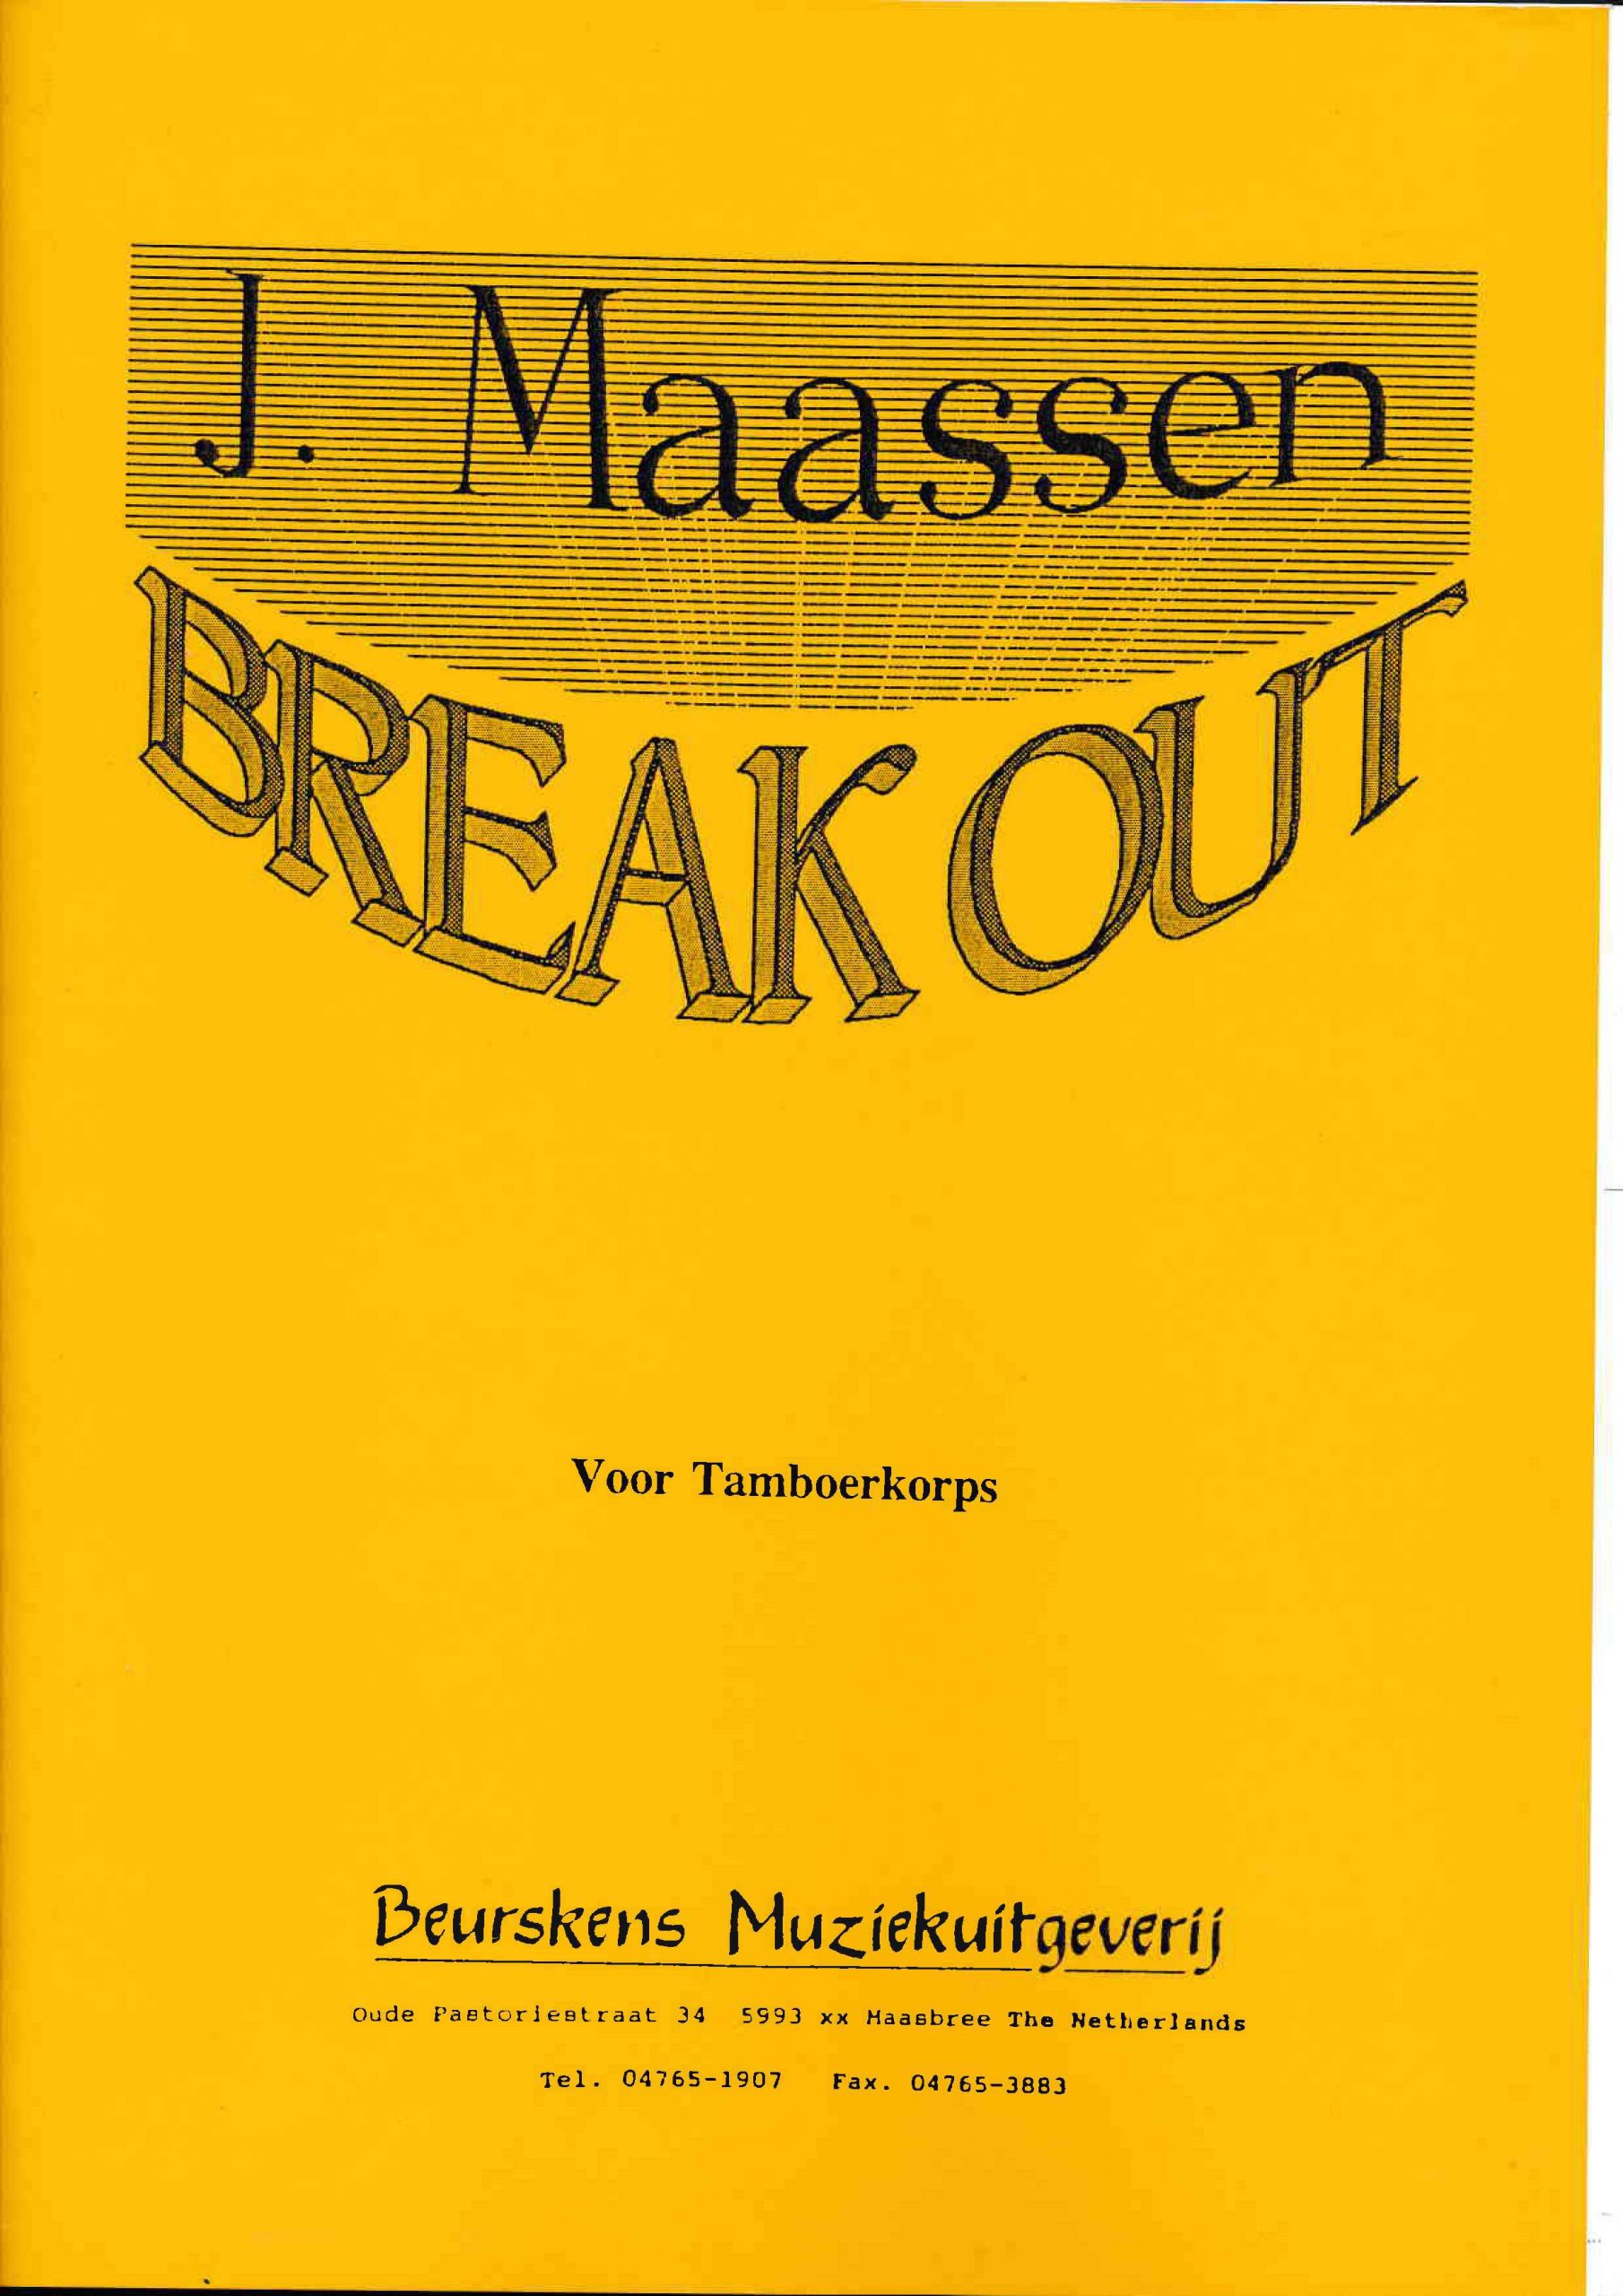 Break Out by John Maassen